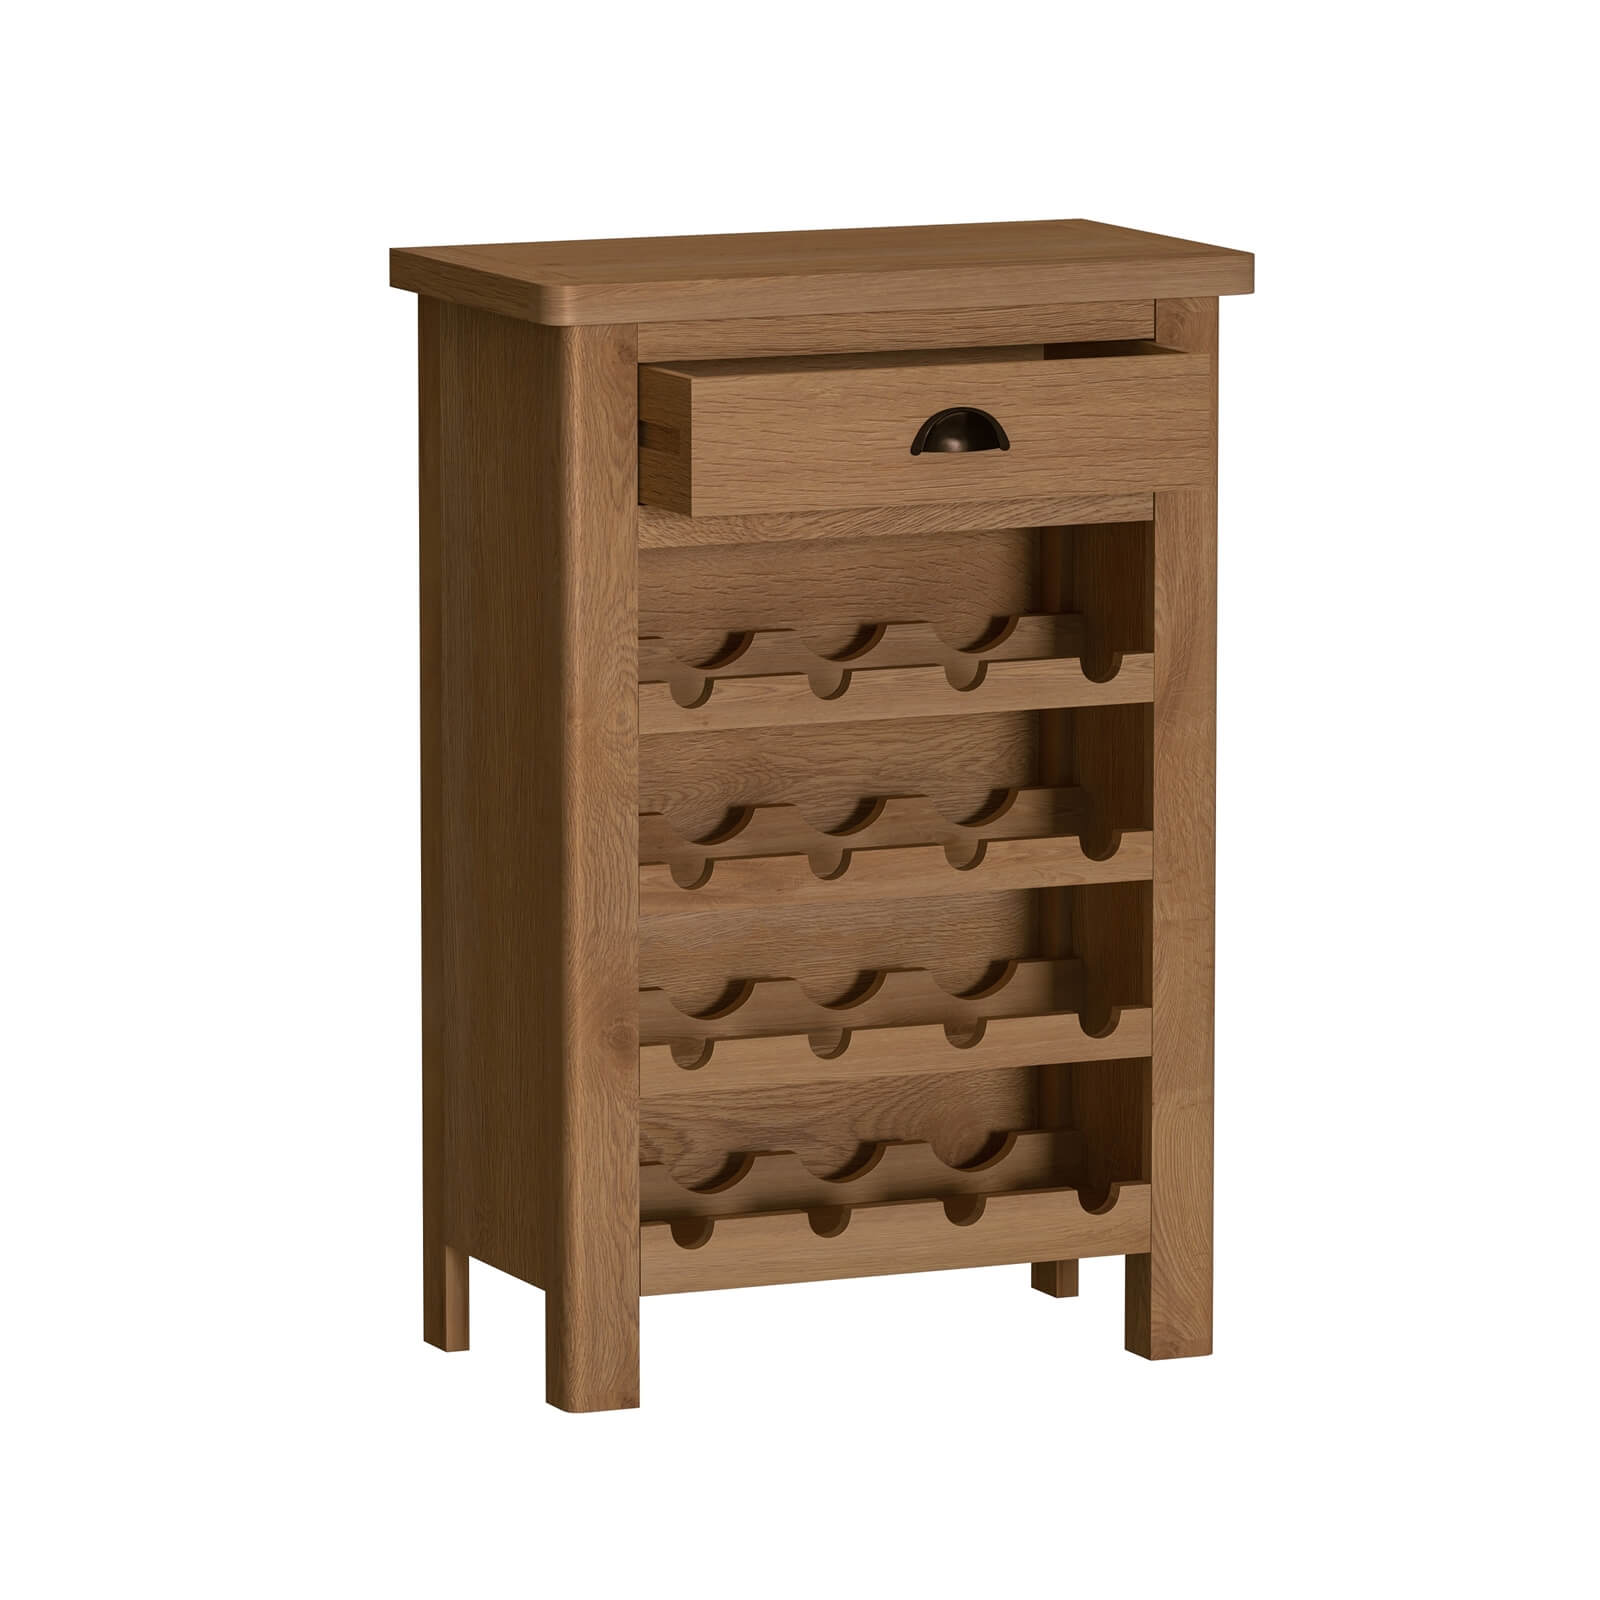 Newlyn Wine Cabinet - Oak